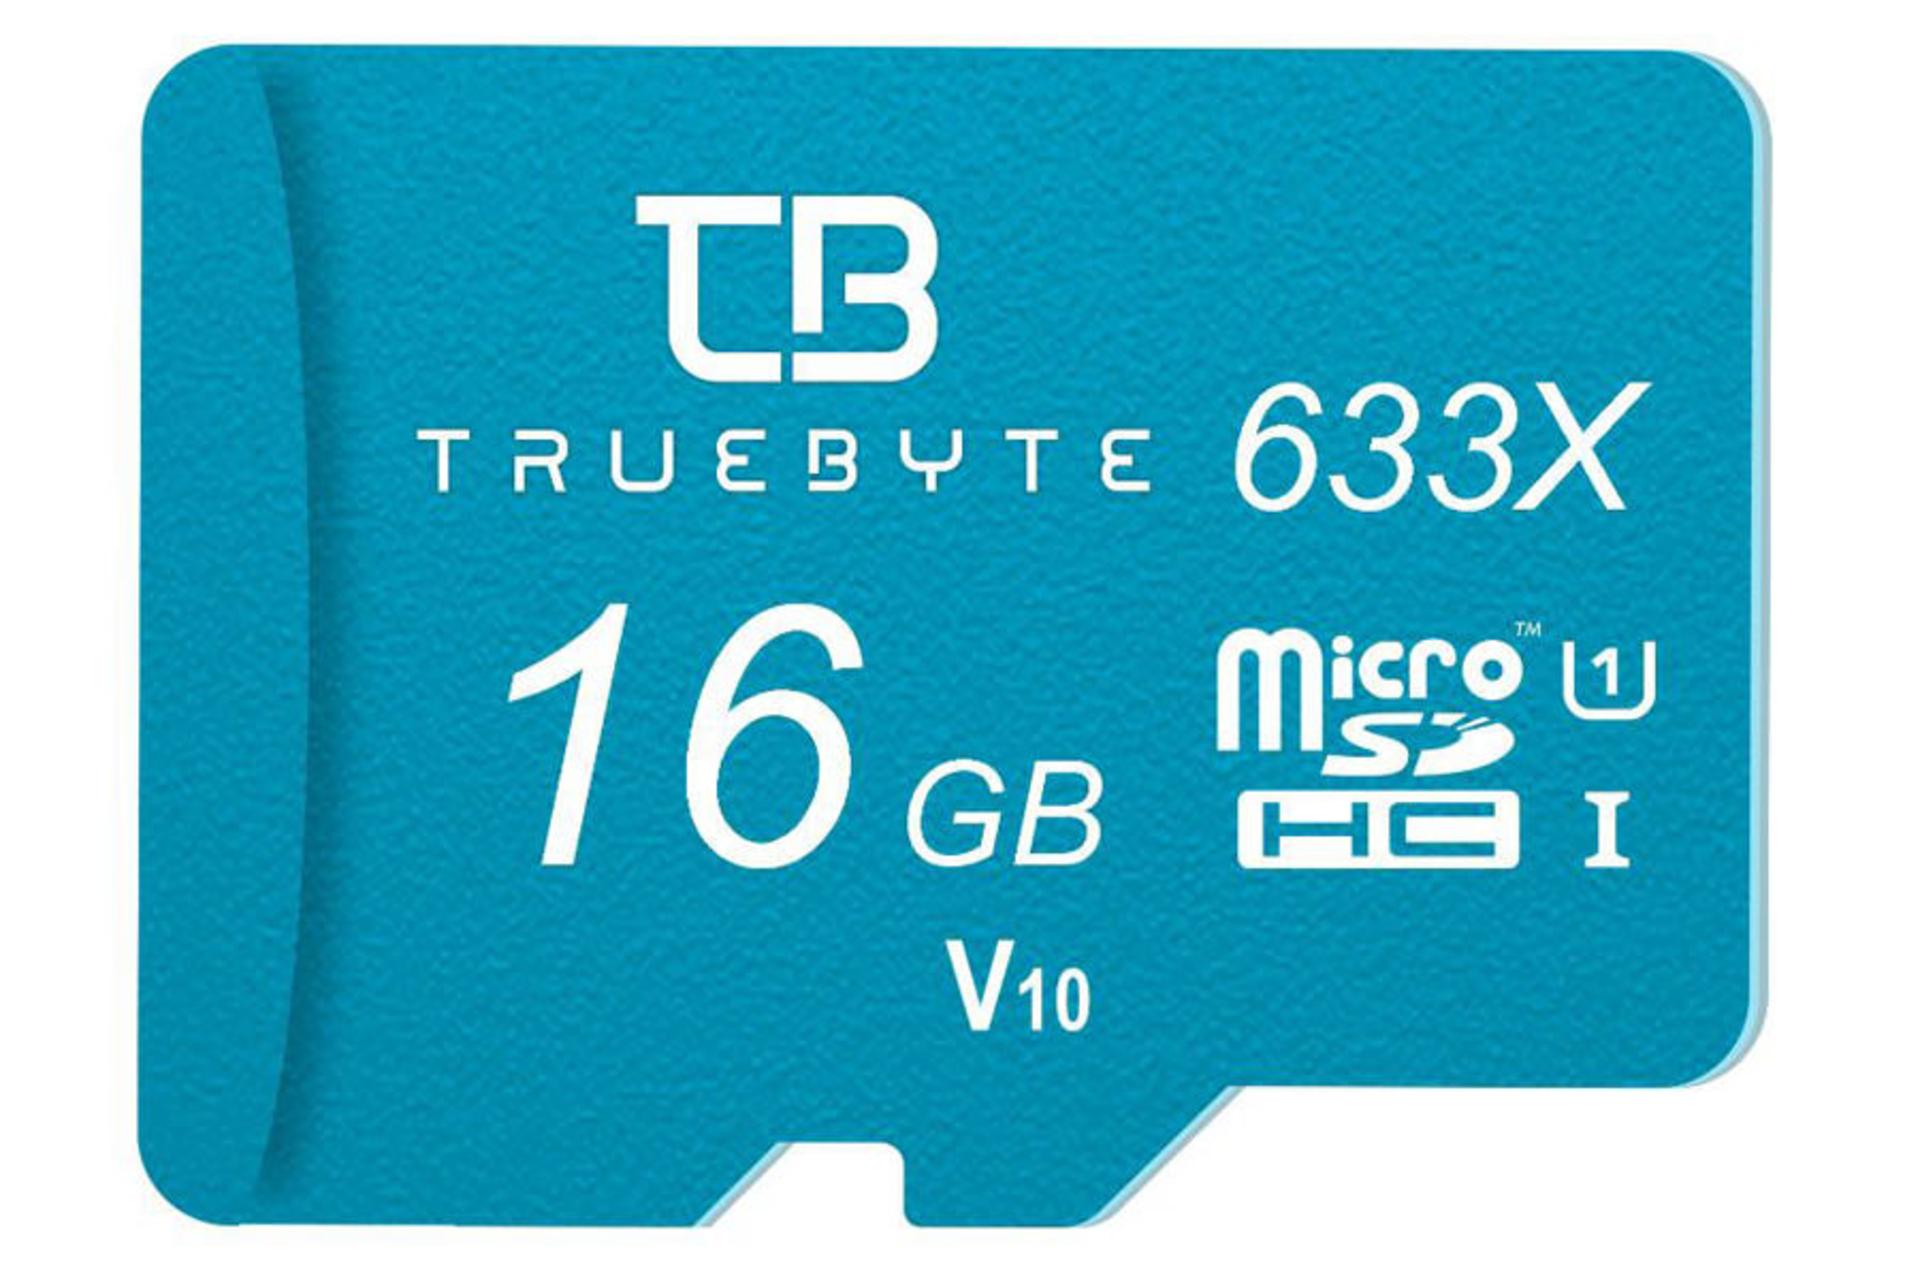 کارت حافظه تروبایت MicroSDHC ظرفیت 16 گیگابایت مدل 633X MicroSDHC V10